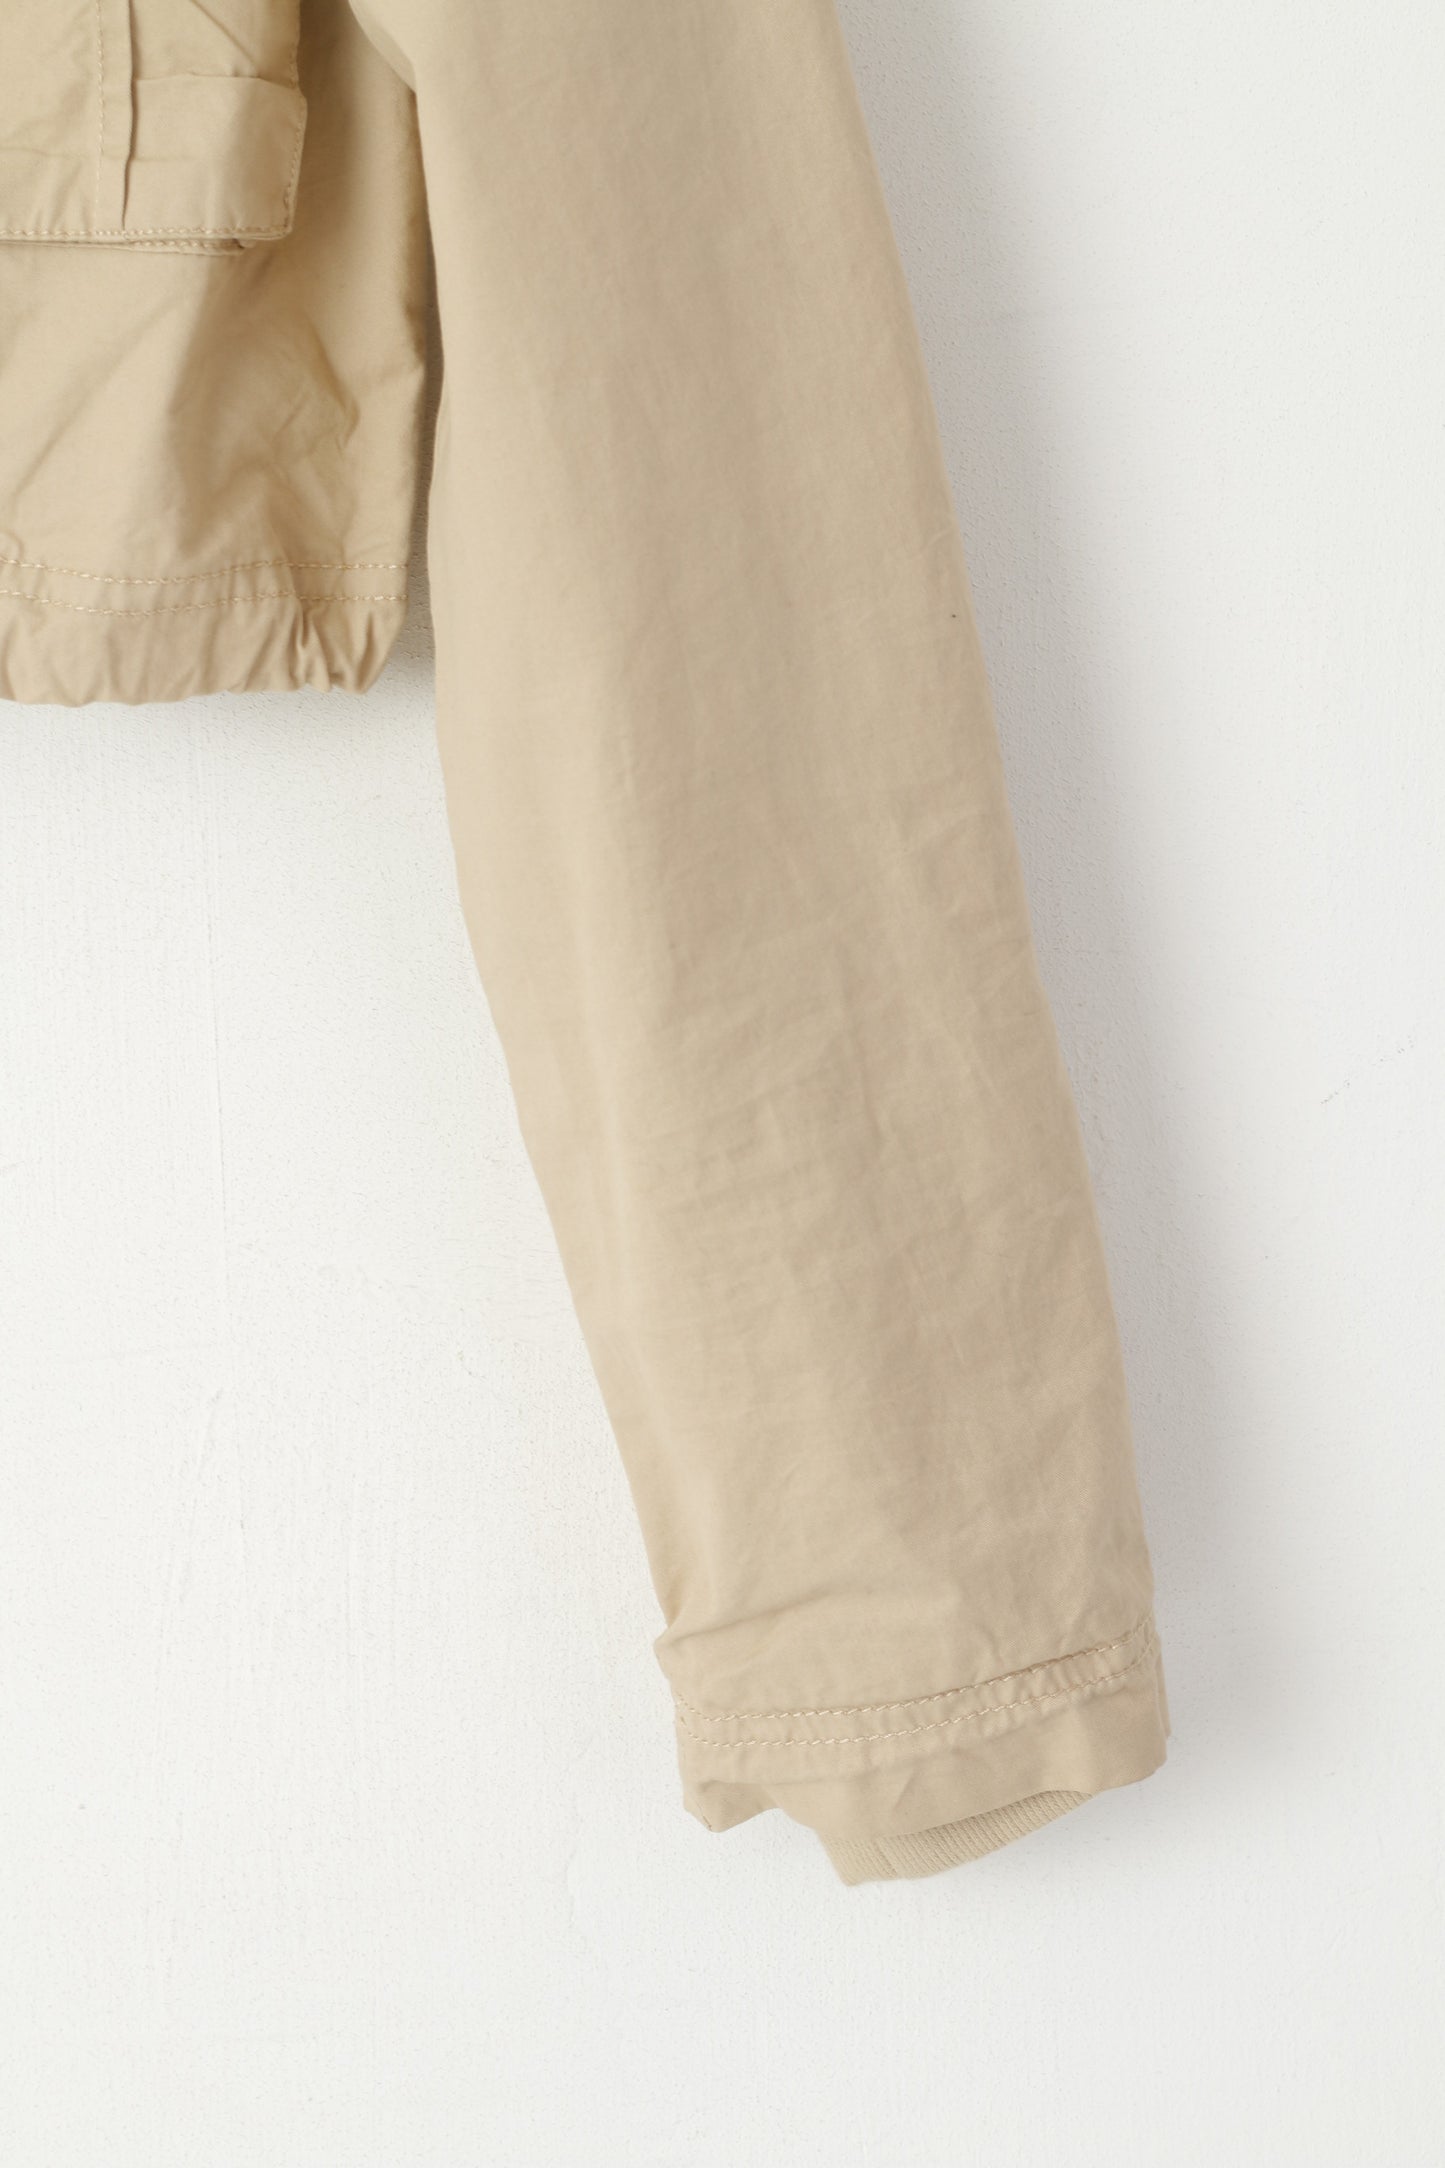 Bershka Women M (S) Jacket Beige Cropped Cotton Snap Pockets Sport Top